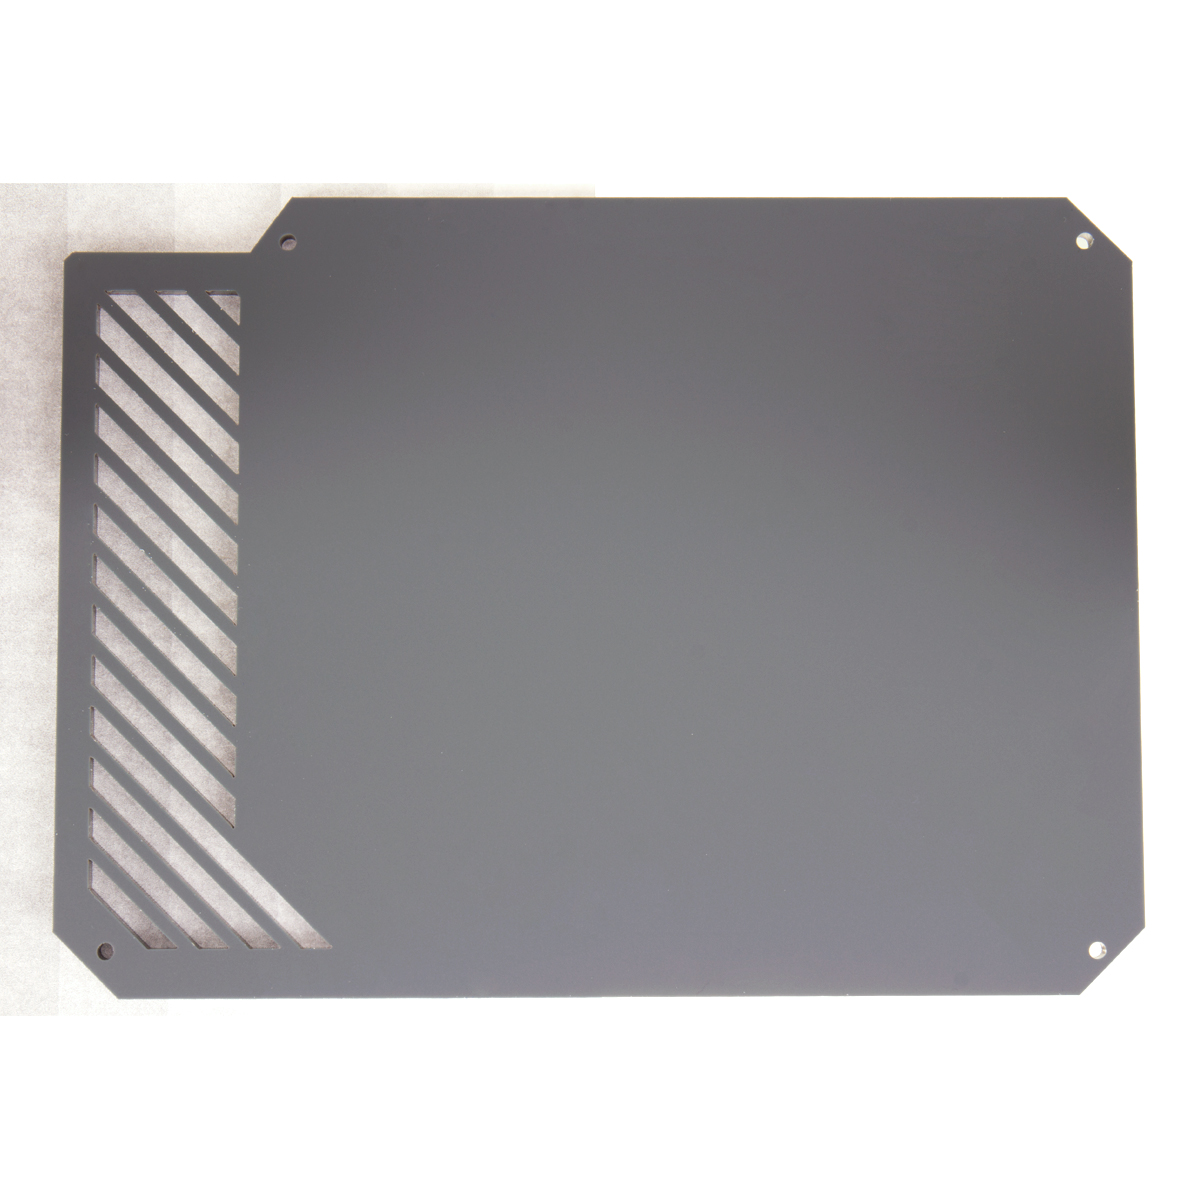 Lazer3D - Lazer3D LZ7 Front Panel - Mineral Grey